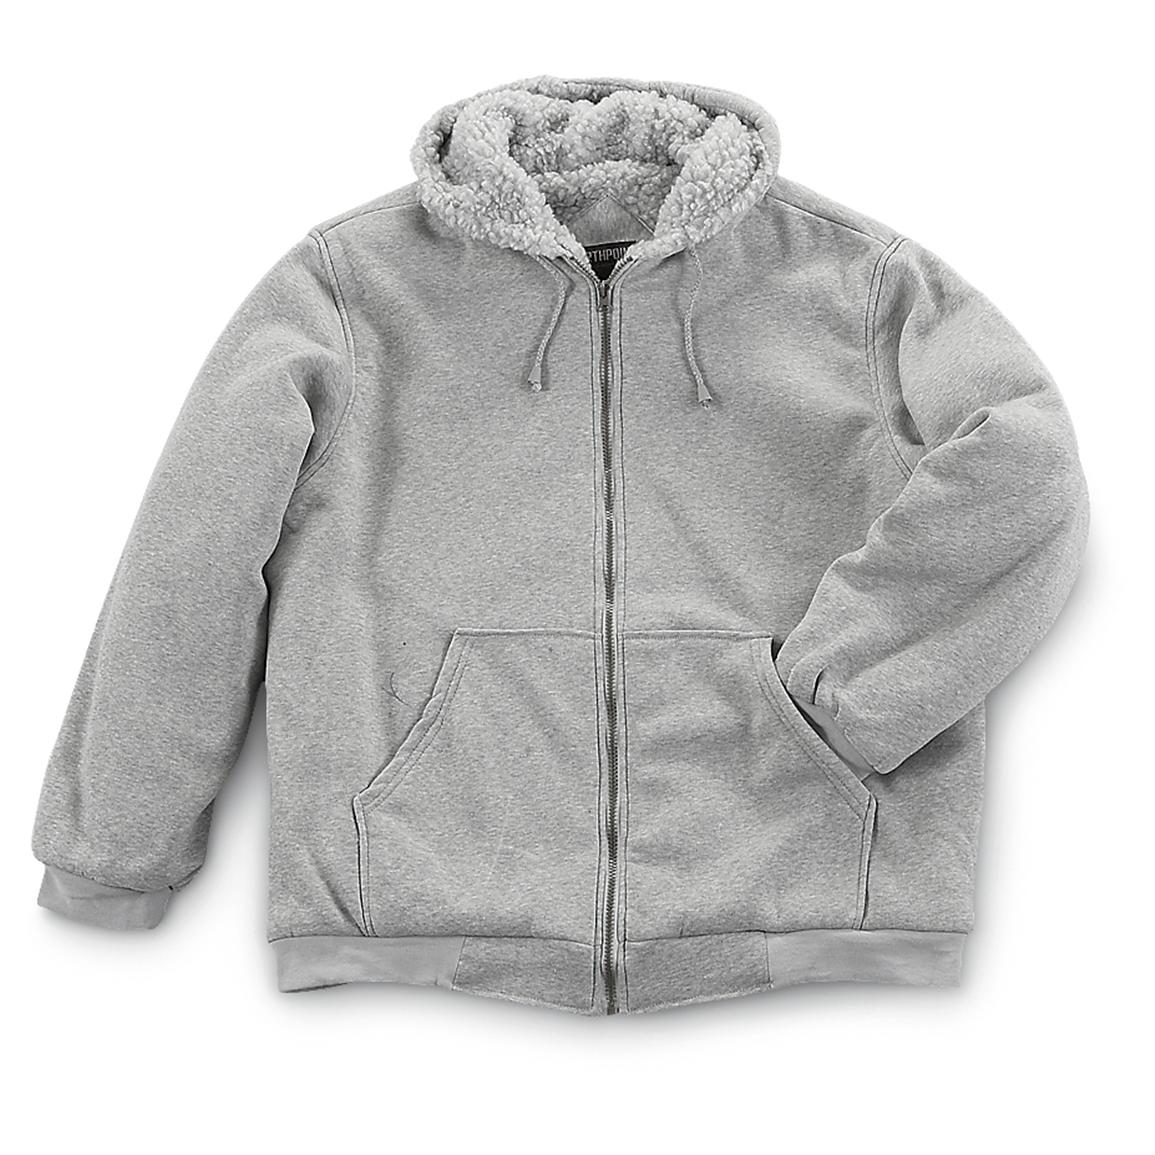 Northpoint Fleece - lined Hooded Sweatshirt - 188199, Sweatshirts ...